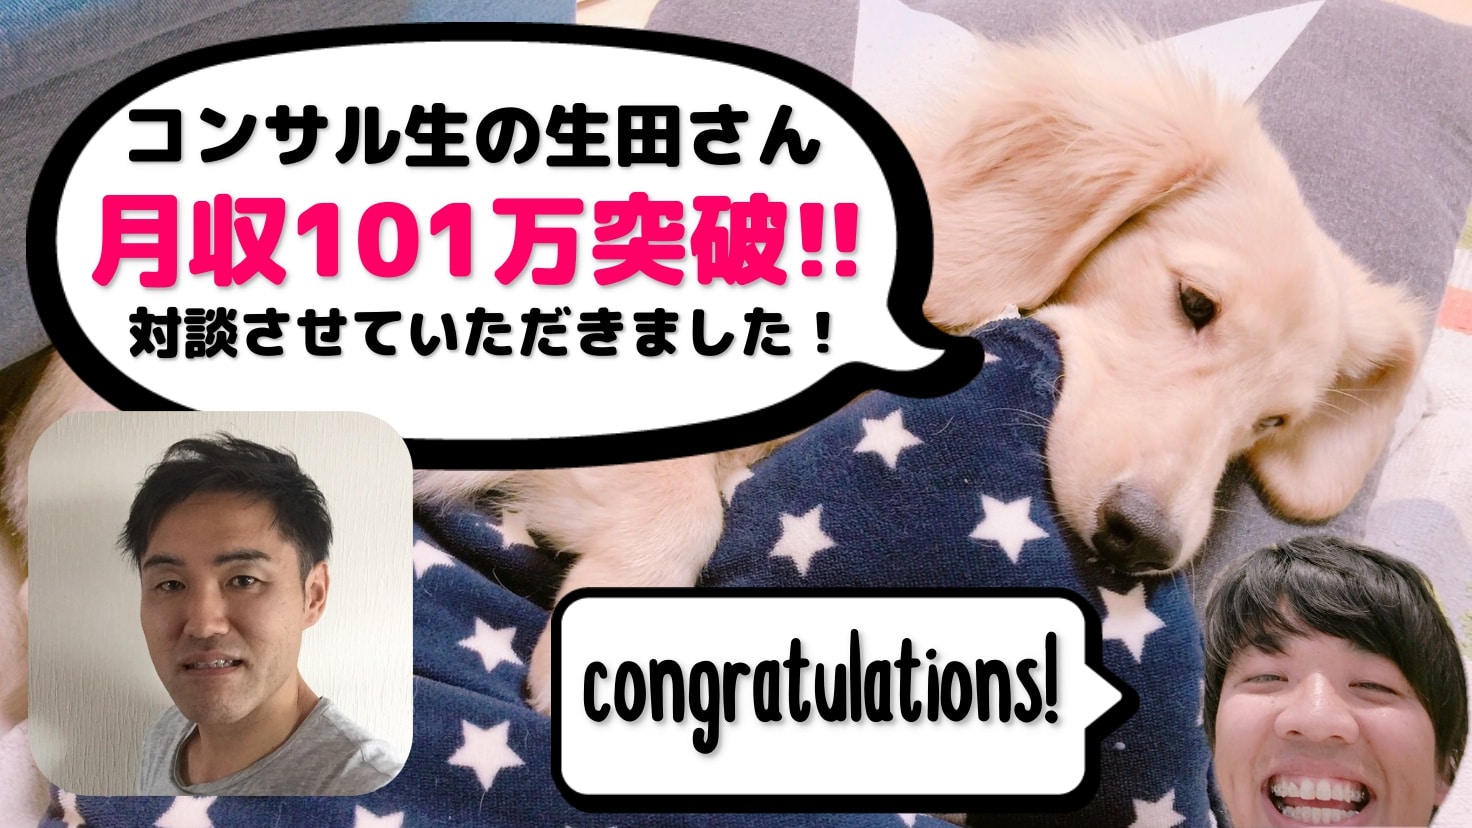 【物販コンサル】生田さんが月収101万突破しました！おめでとうございます！